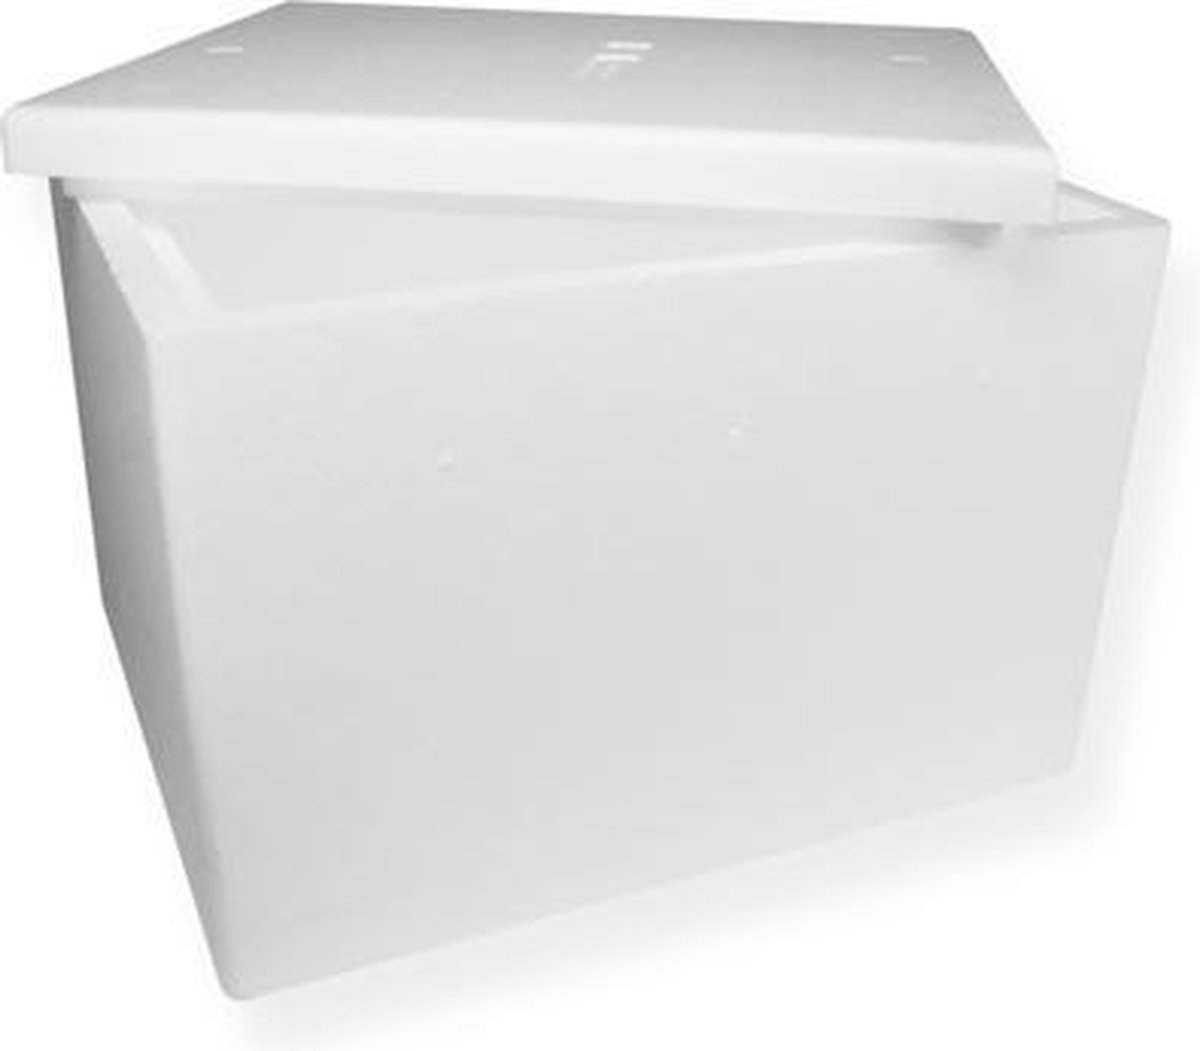 Koelbox -Eps-Koeldoos - Thermobox 317 mm x 418 mm Wit per 3 stuks ook voor medische toepassingen